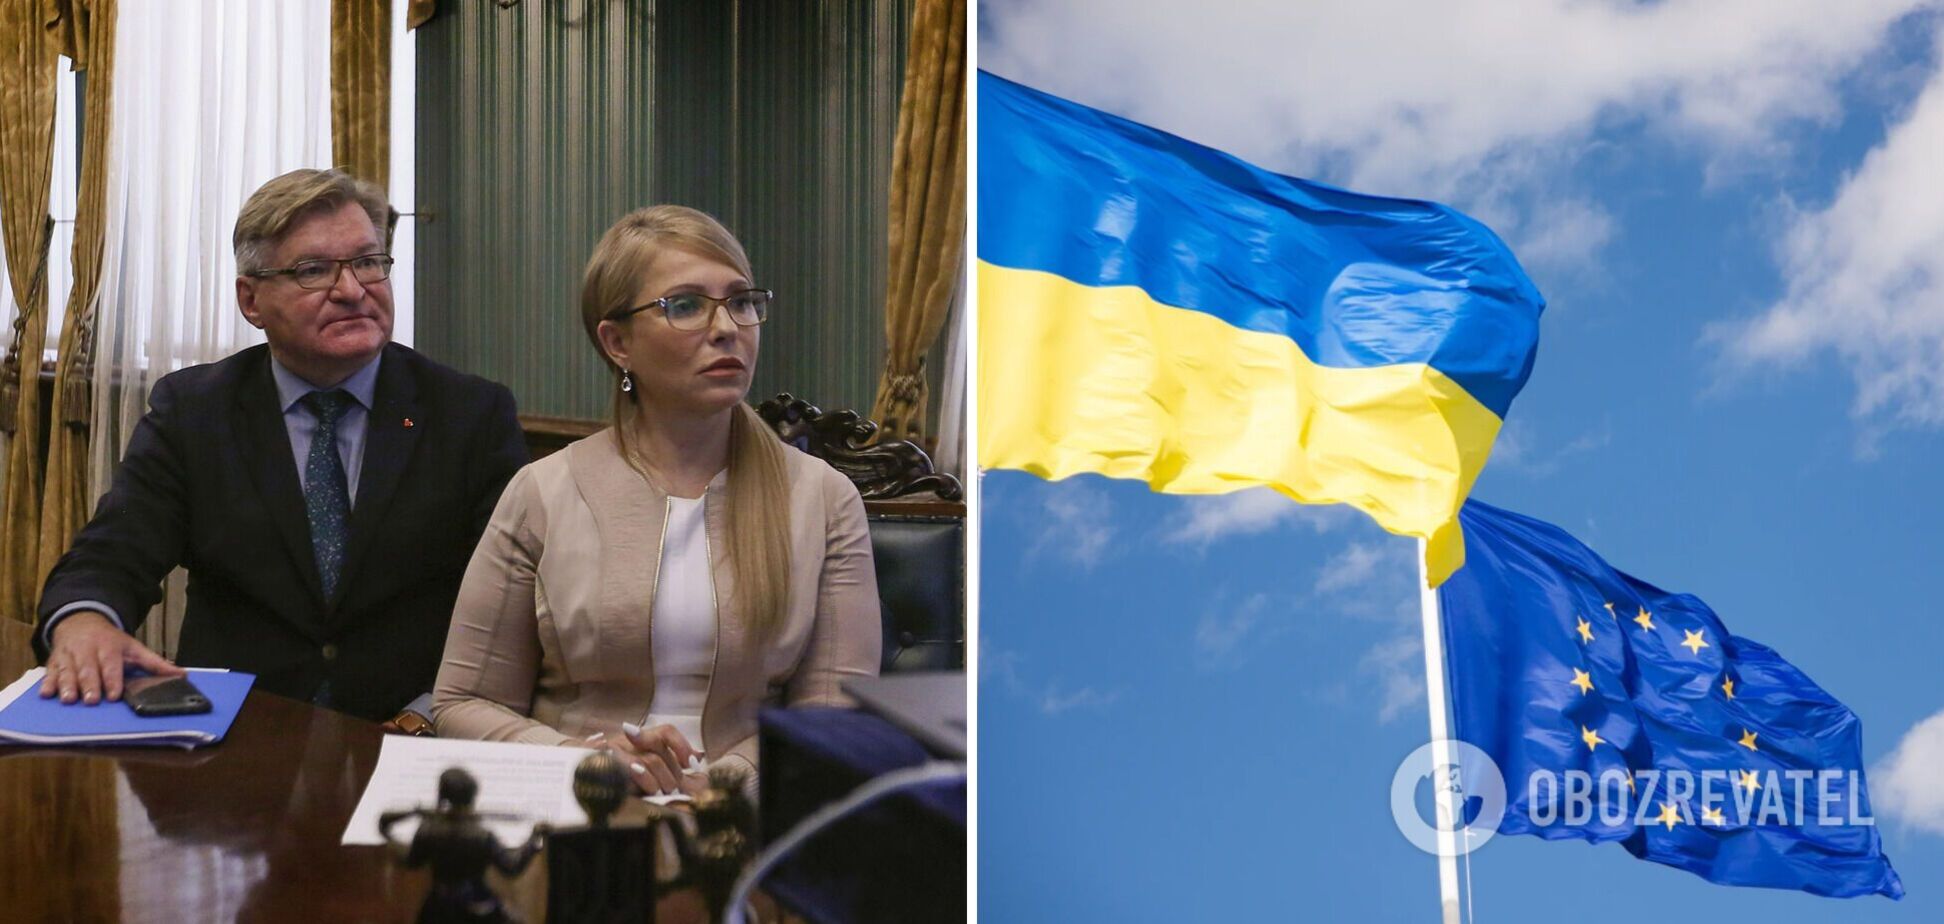 Тимошенко и Немыря пытаются убедить евродепутатов не принимать Украину в ЕС по ускоренной процедуре – источники